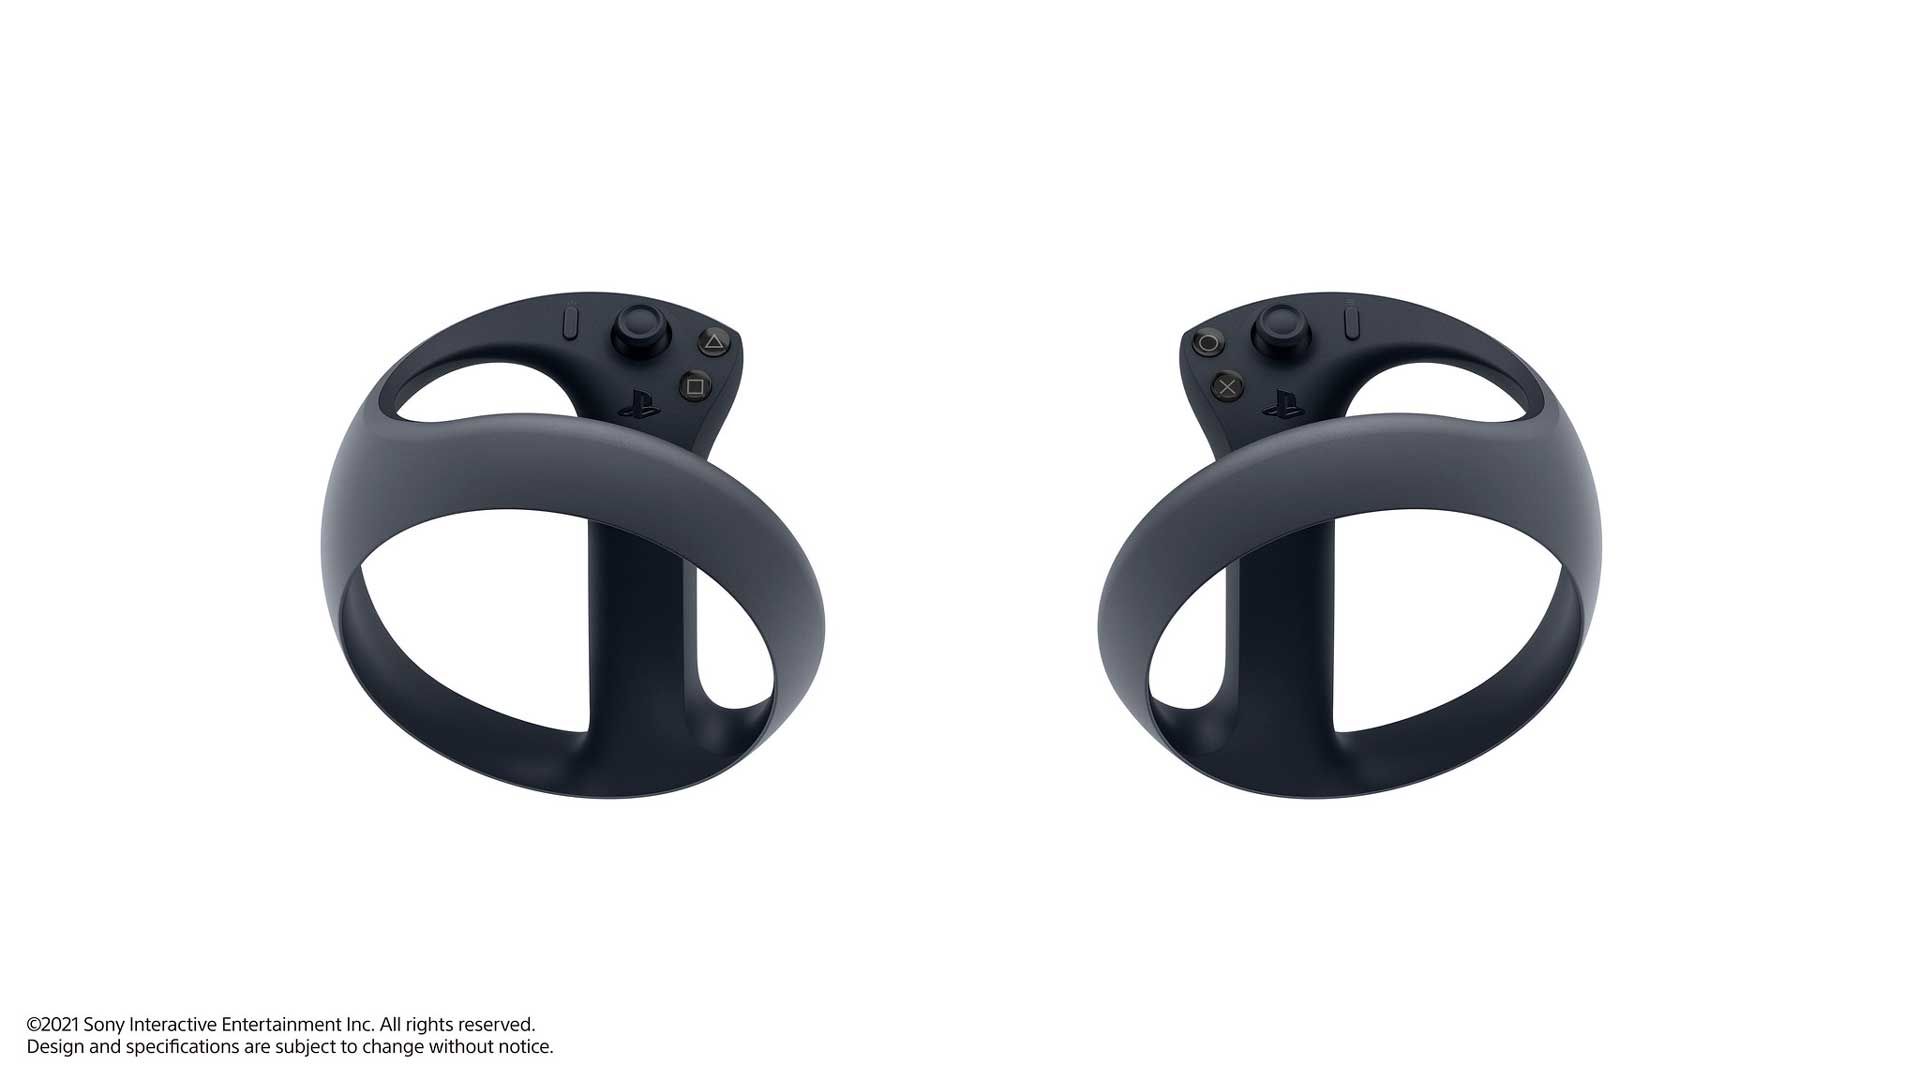 دو دسته پلی استیشن VR جدید سونی در کنار یکدیگر با رنگ سیاه